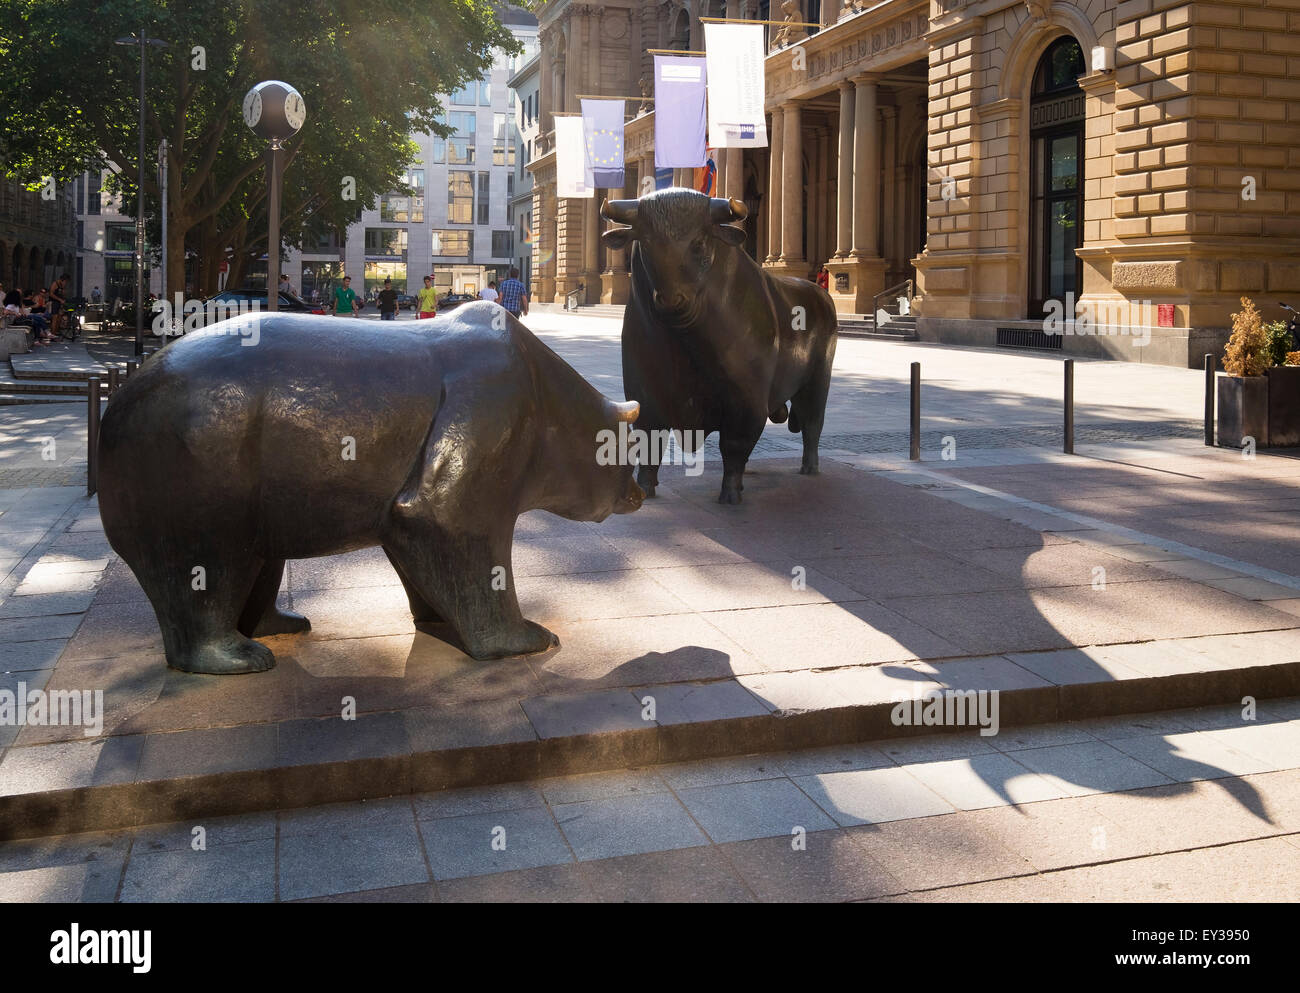 Esculturas de bronce Bull and Bear, plaza de la bolsa, Frankfurt am Main, Hesse, Alemania Foto de stock